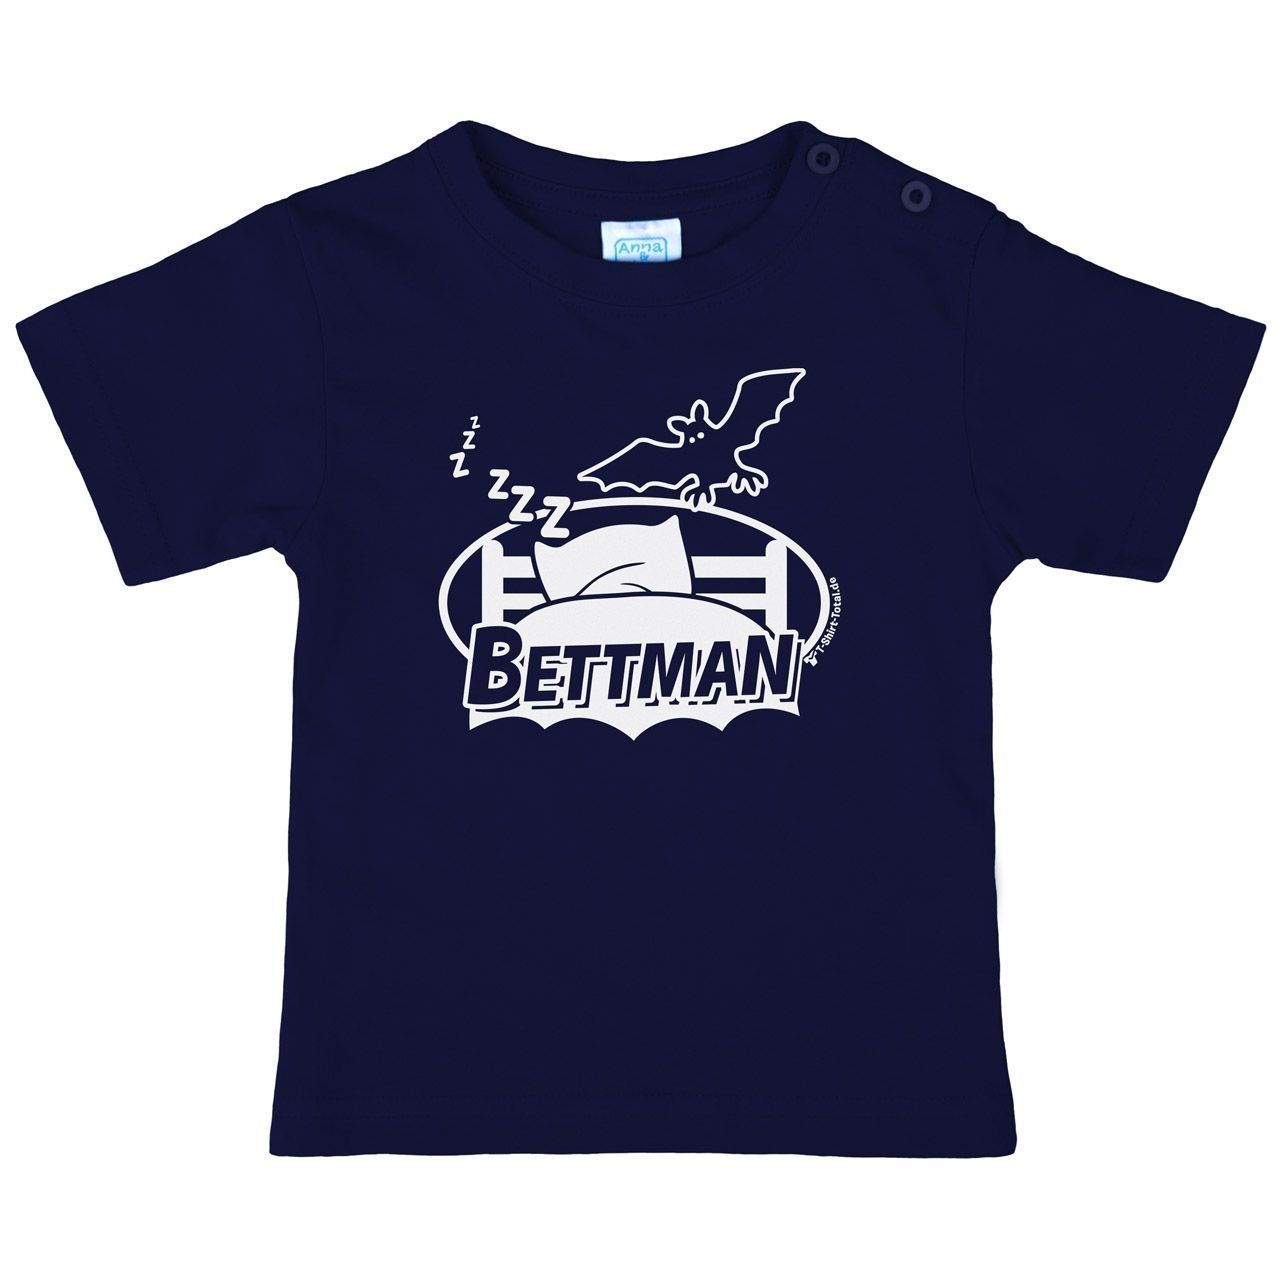 Bettman Kinder T-Shirt navy 56 / 62